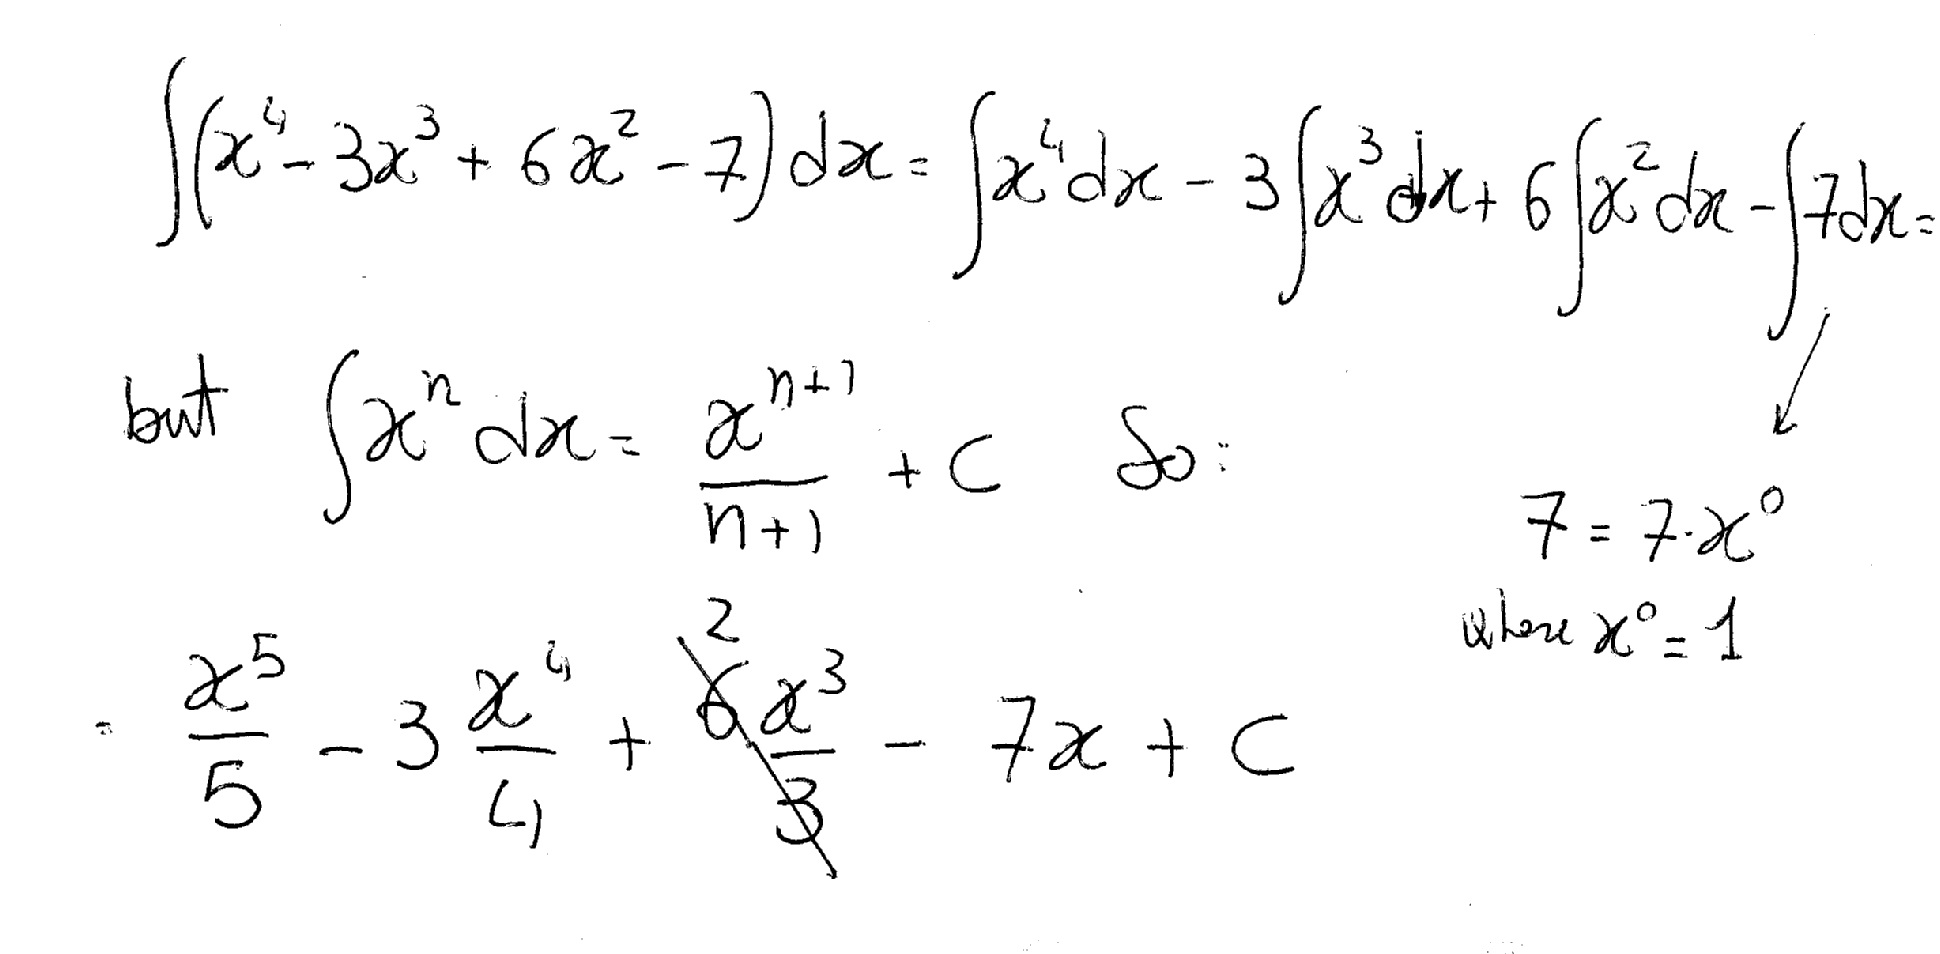 Интеграл 3x 2 2x 4 dx. Интеграл 4dx/(3-6x) ^6. Интегралы (2^x + 7^x)^2. 3dx/x+3 интеграл. Интеграл (7x+3) / (x:2-4x+5).